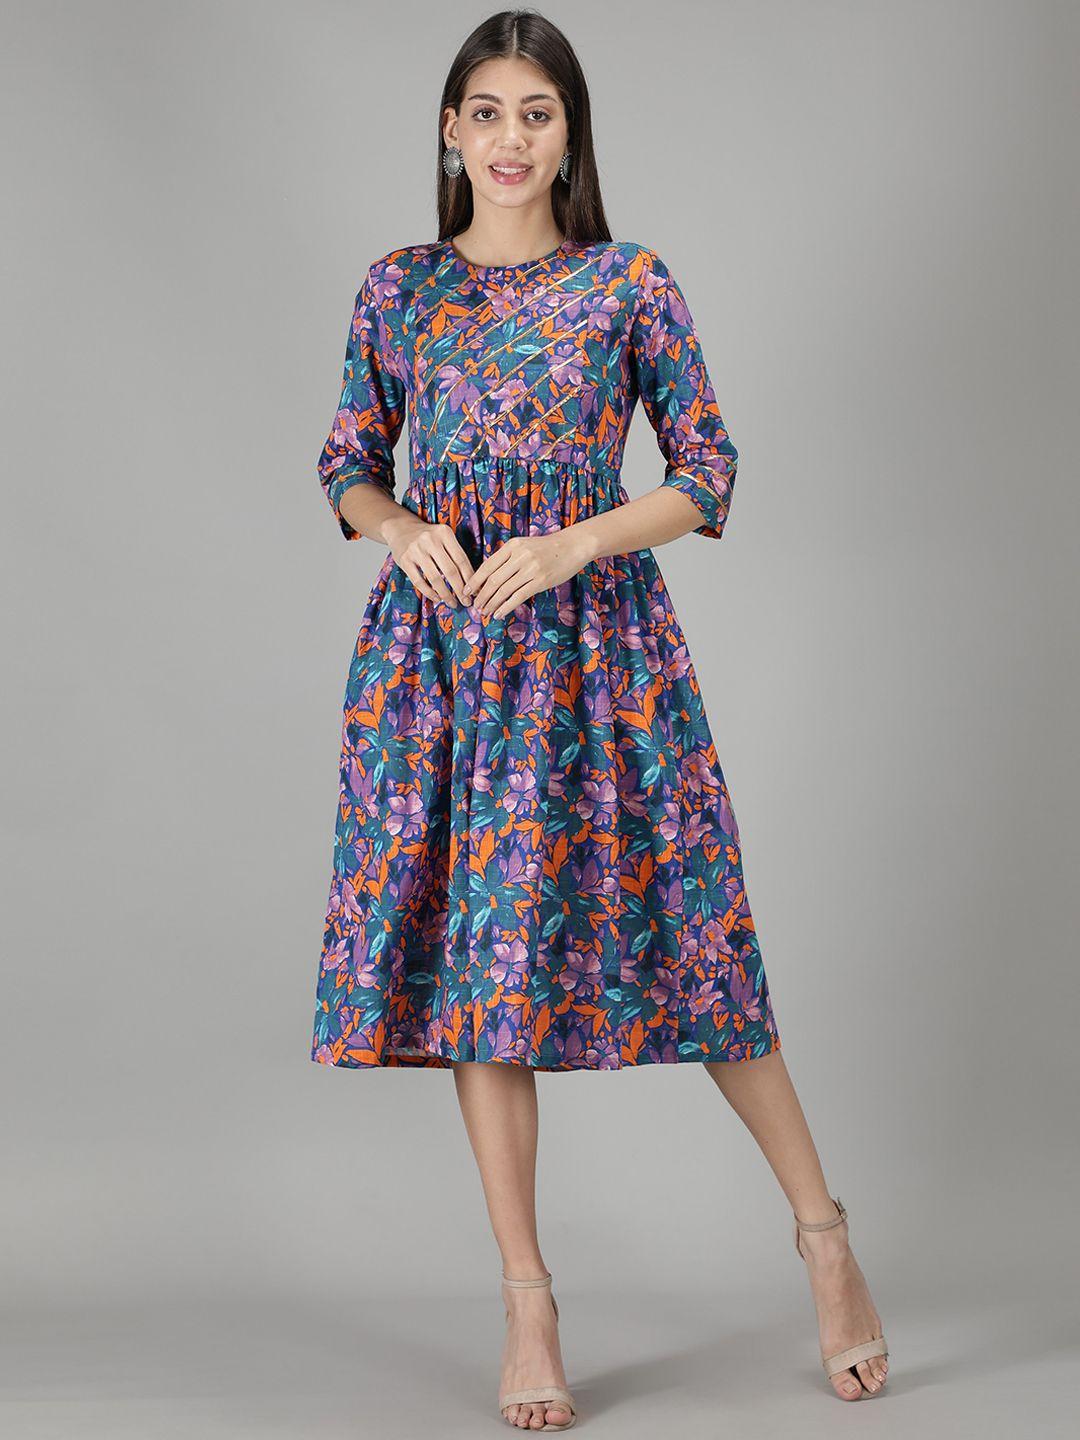 cot'n soft teal & violet floral printed cotton a-line dress